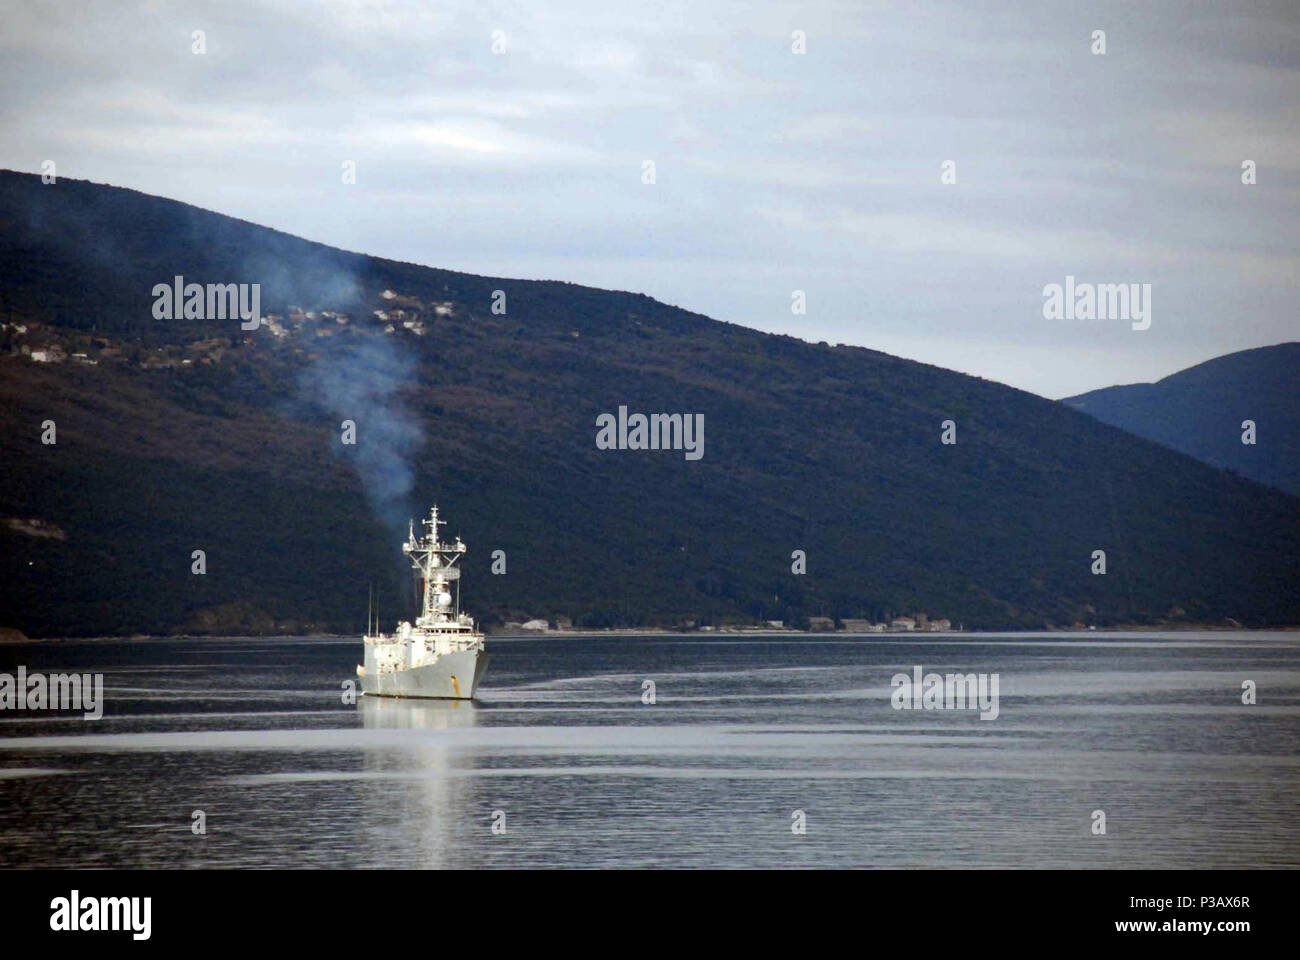 Montenegro (31. März 2007), die Spanische Marine Schiff Navarra (F85) eine Komponente Schiff der Standing NATO Maritime Group (Snmg 2), zieht in den Hafen um Tivat Montenegro als Teil eines Port besuchen Sie die von der Gruppe der jungen Nation. Dies ist der erste Besuch eines NATO maritime Group zu Montenegro seit der Unabhängigkeit des Landes vor einem Jahr gewonnen. SNMG 2 wurde als unmittelbare Reaktion der Kraft und der NATO Response Force maritime bereit. U.S. Navy Stockfoto